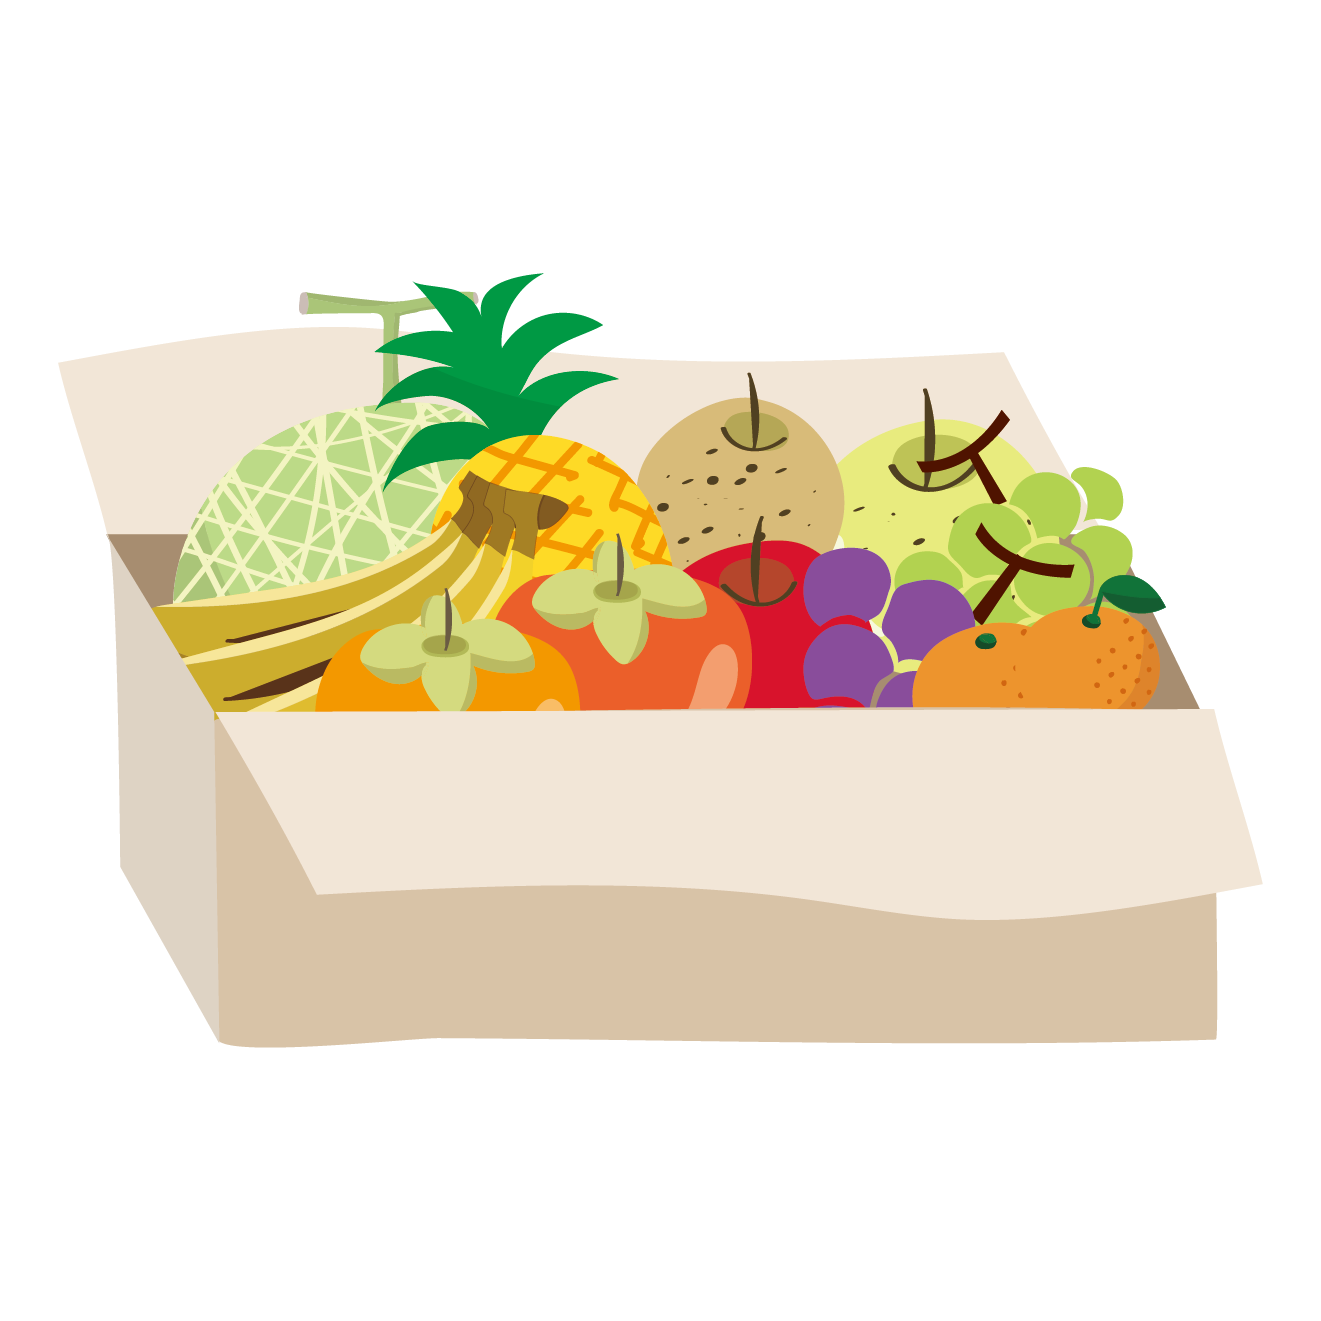 ダンボール箱に入ったフルーツ盛り合わせ 食材宅配のイラスト 商用フリー 無料 のイラスト素材なら イラストマンション